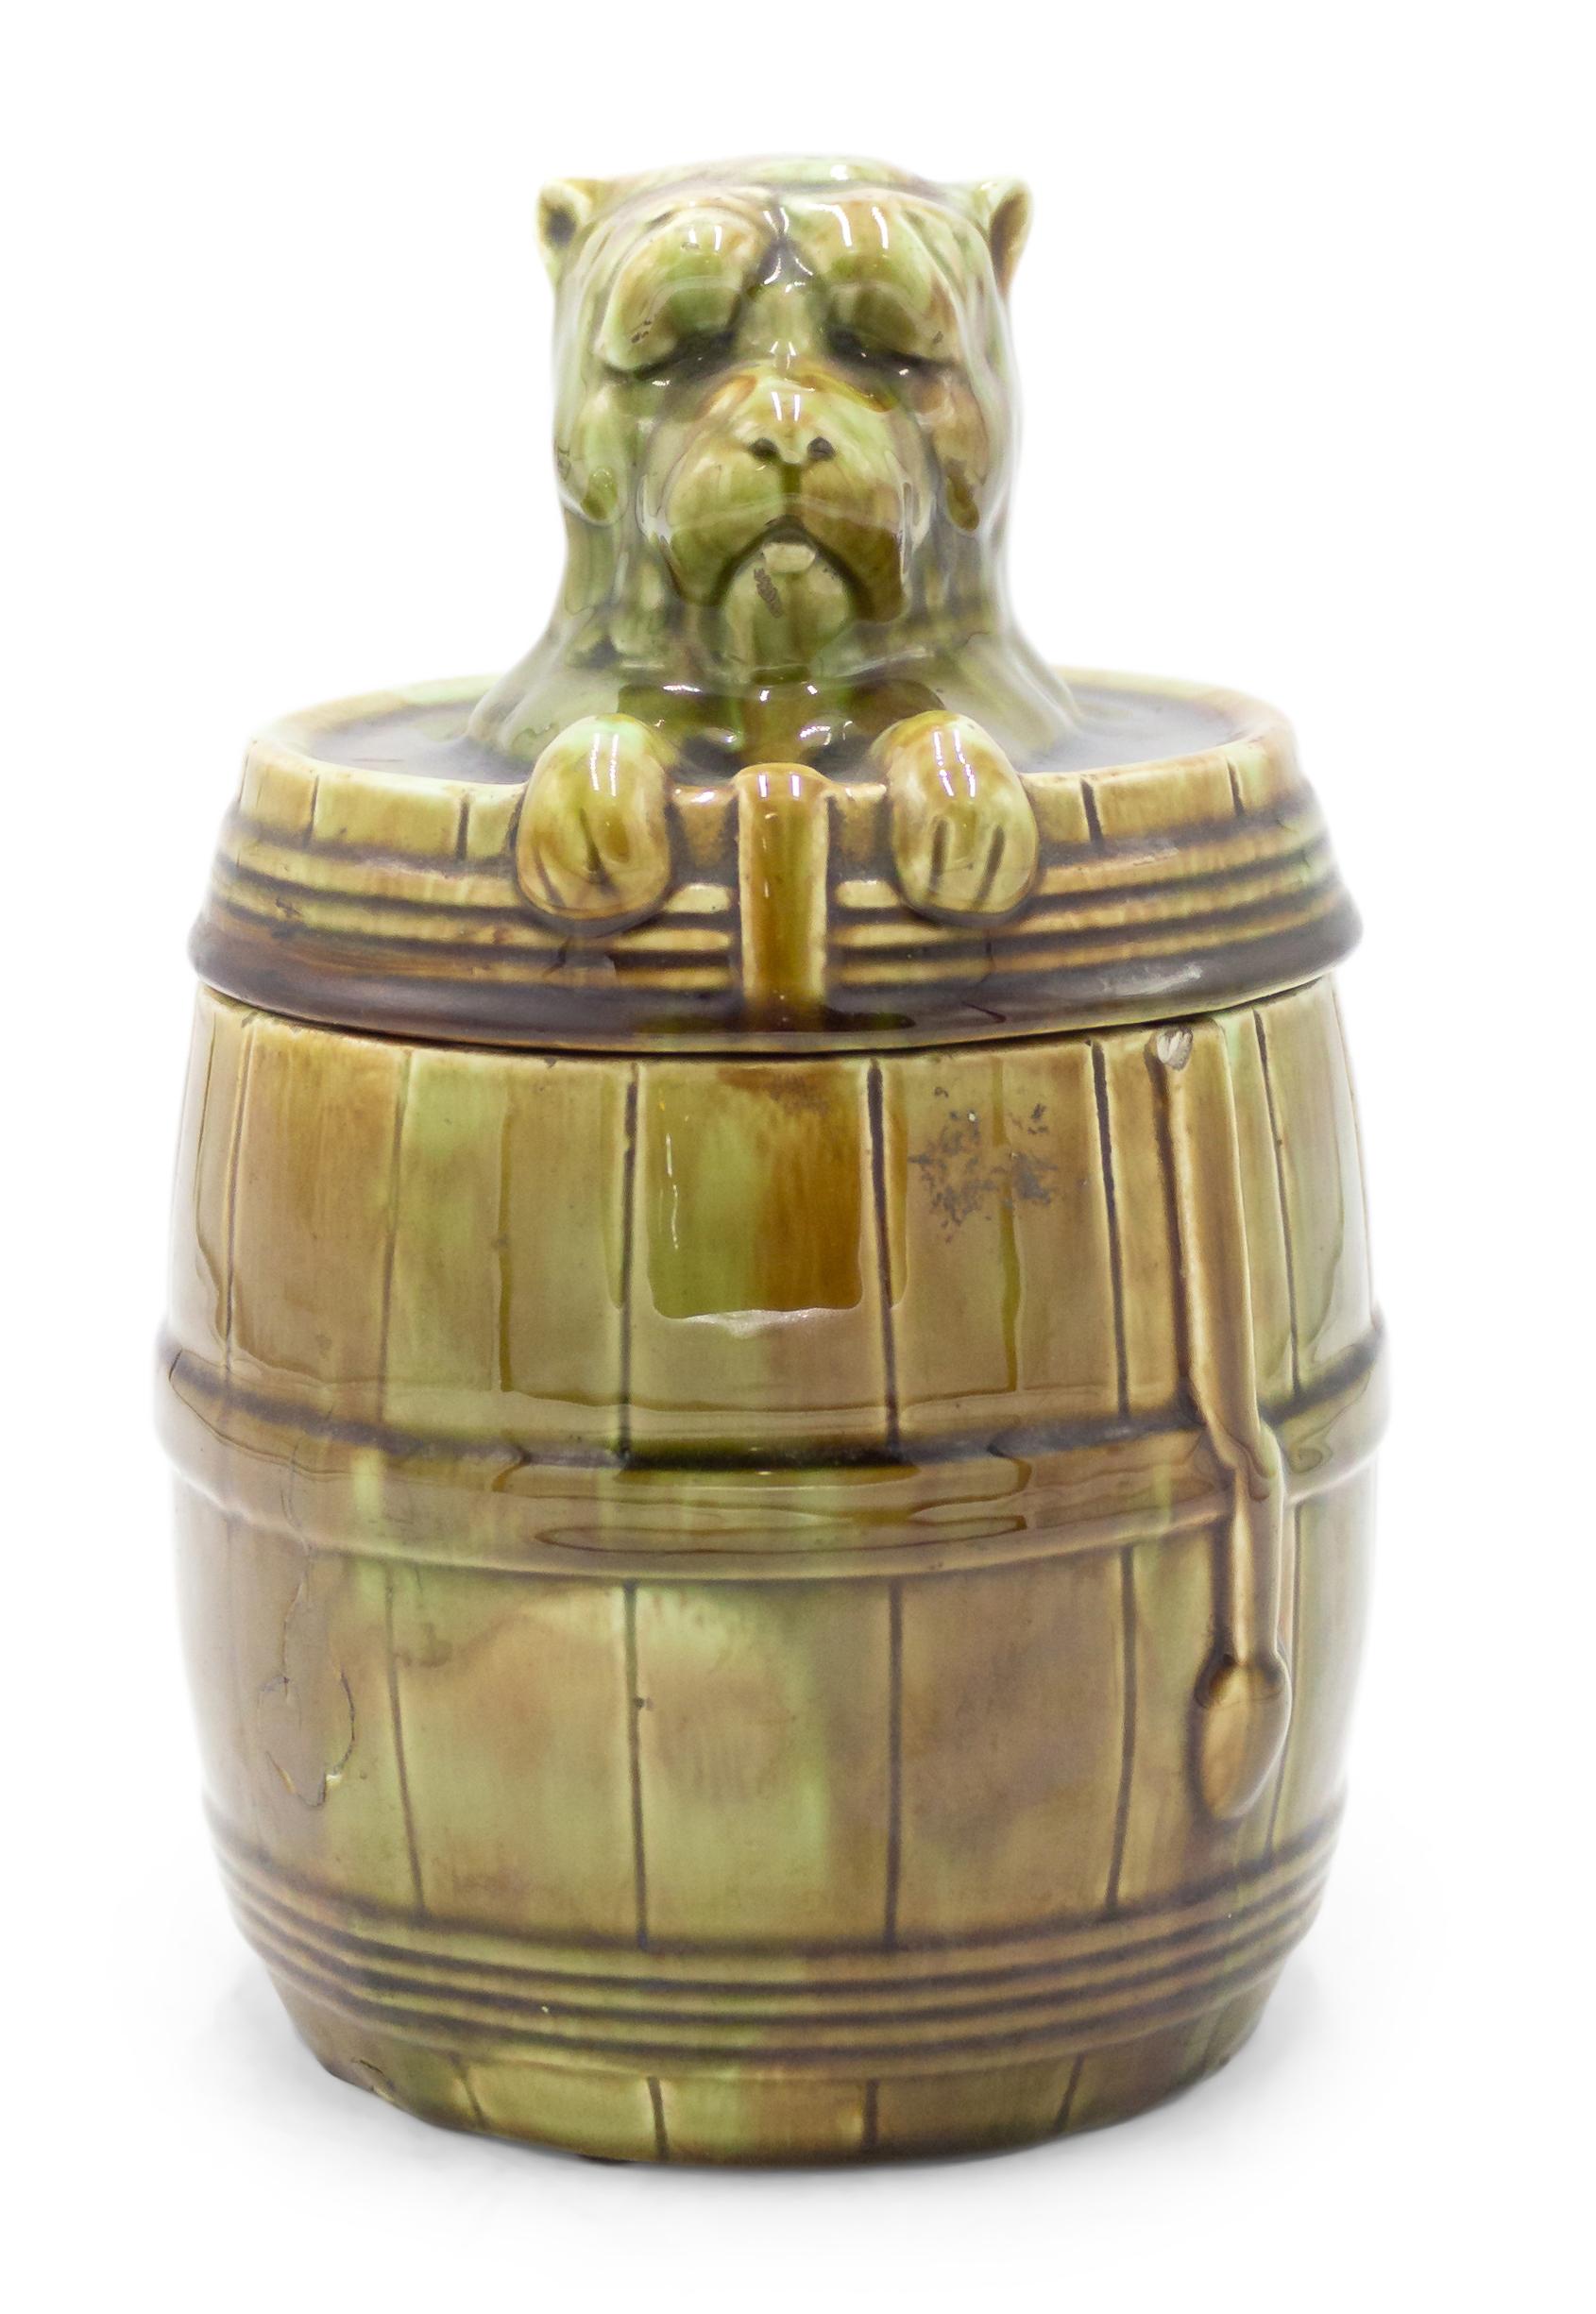 Boîte en porcelaine verte de l'époque victorienne avec tête de chien sur le dessus.
 